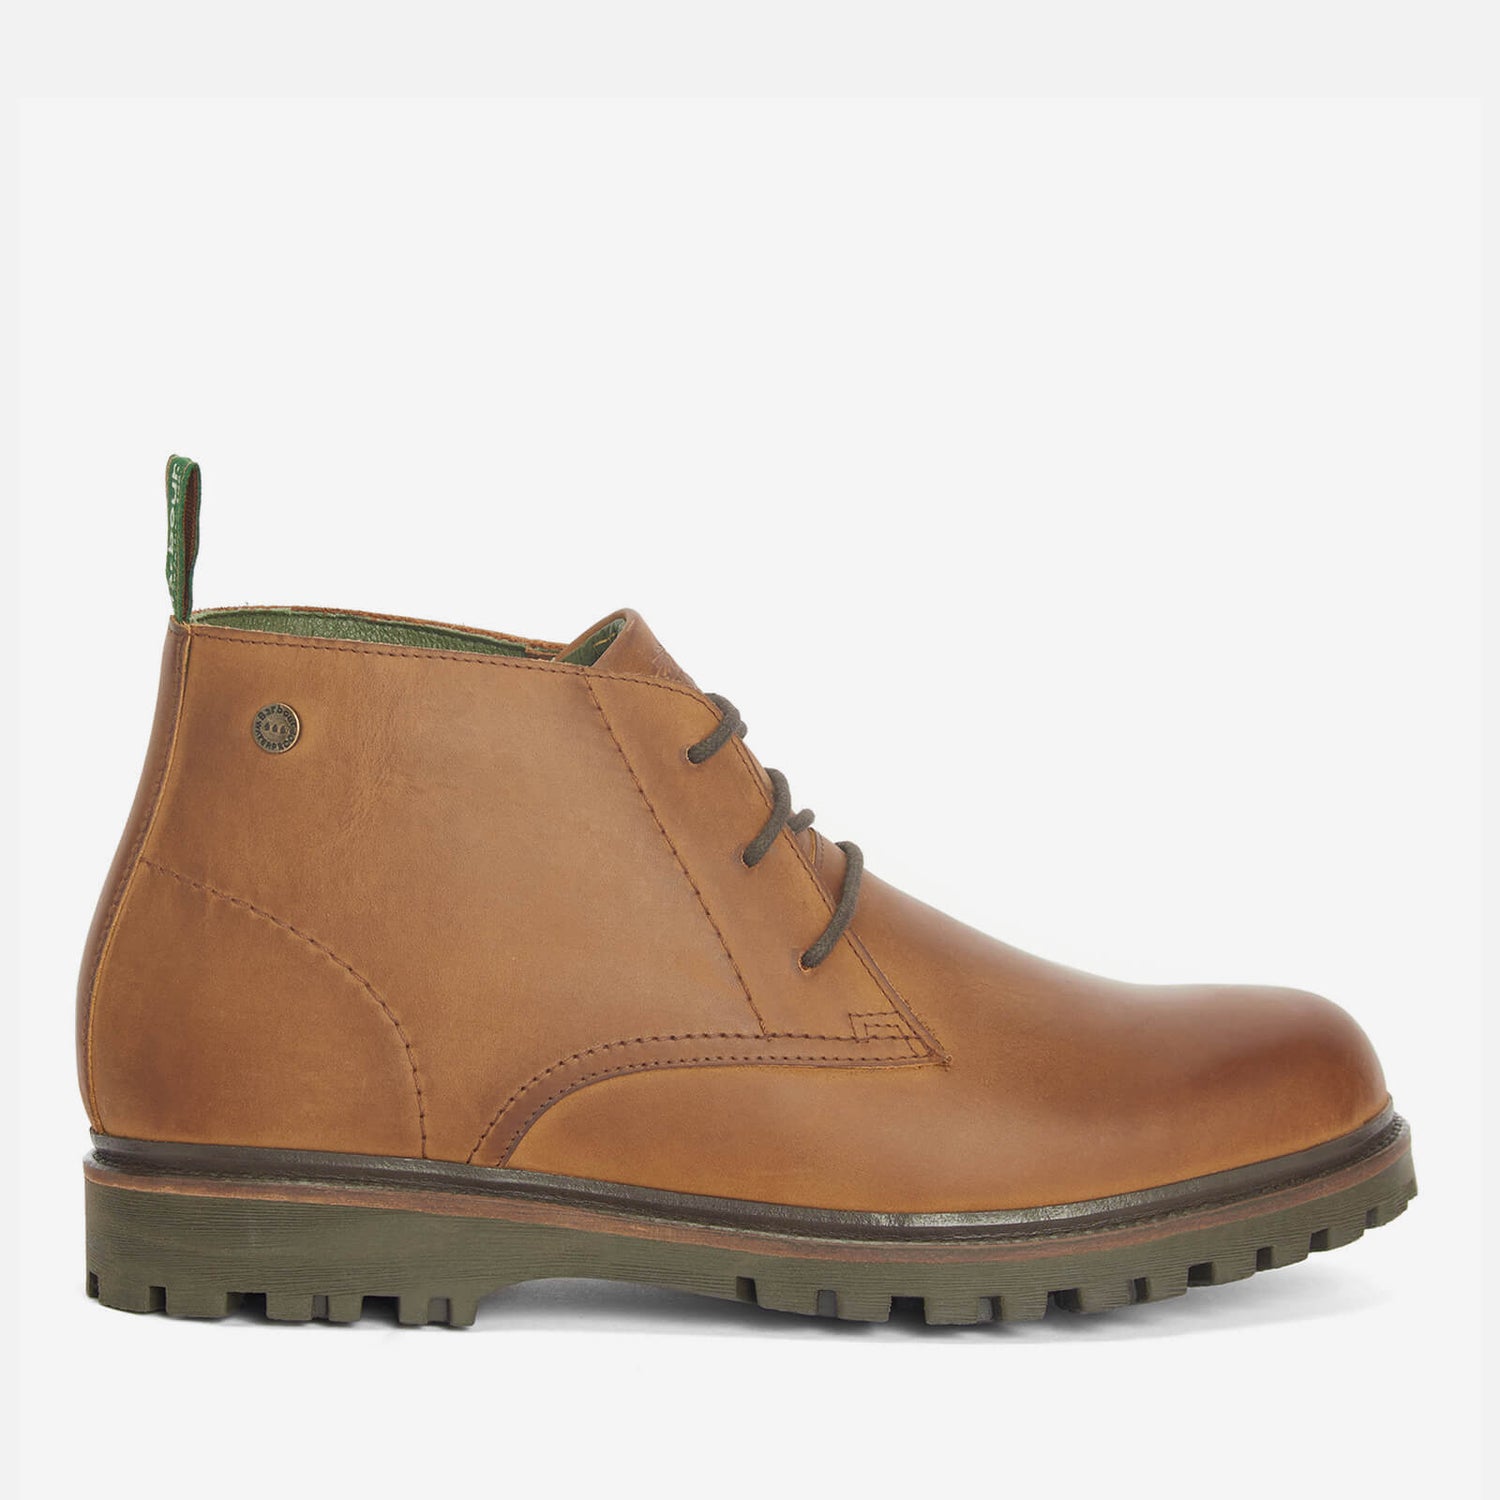 Barbour Men's Cairngorm Waterproof Leather Chukka Boots - UK 7